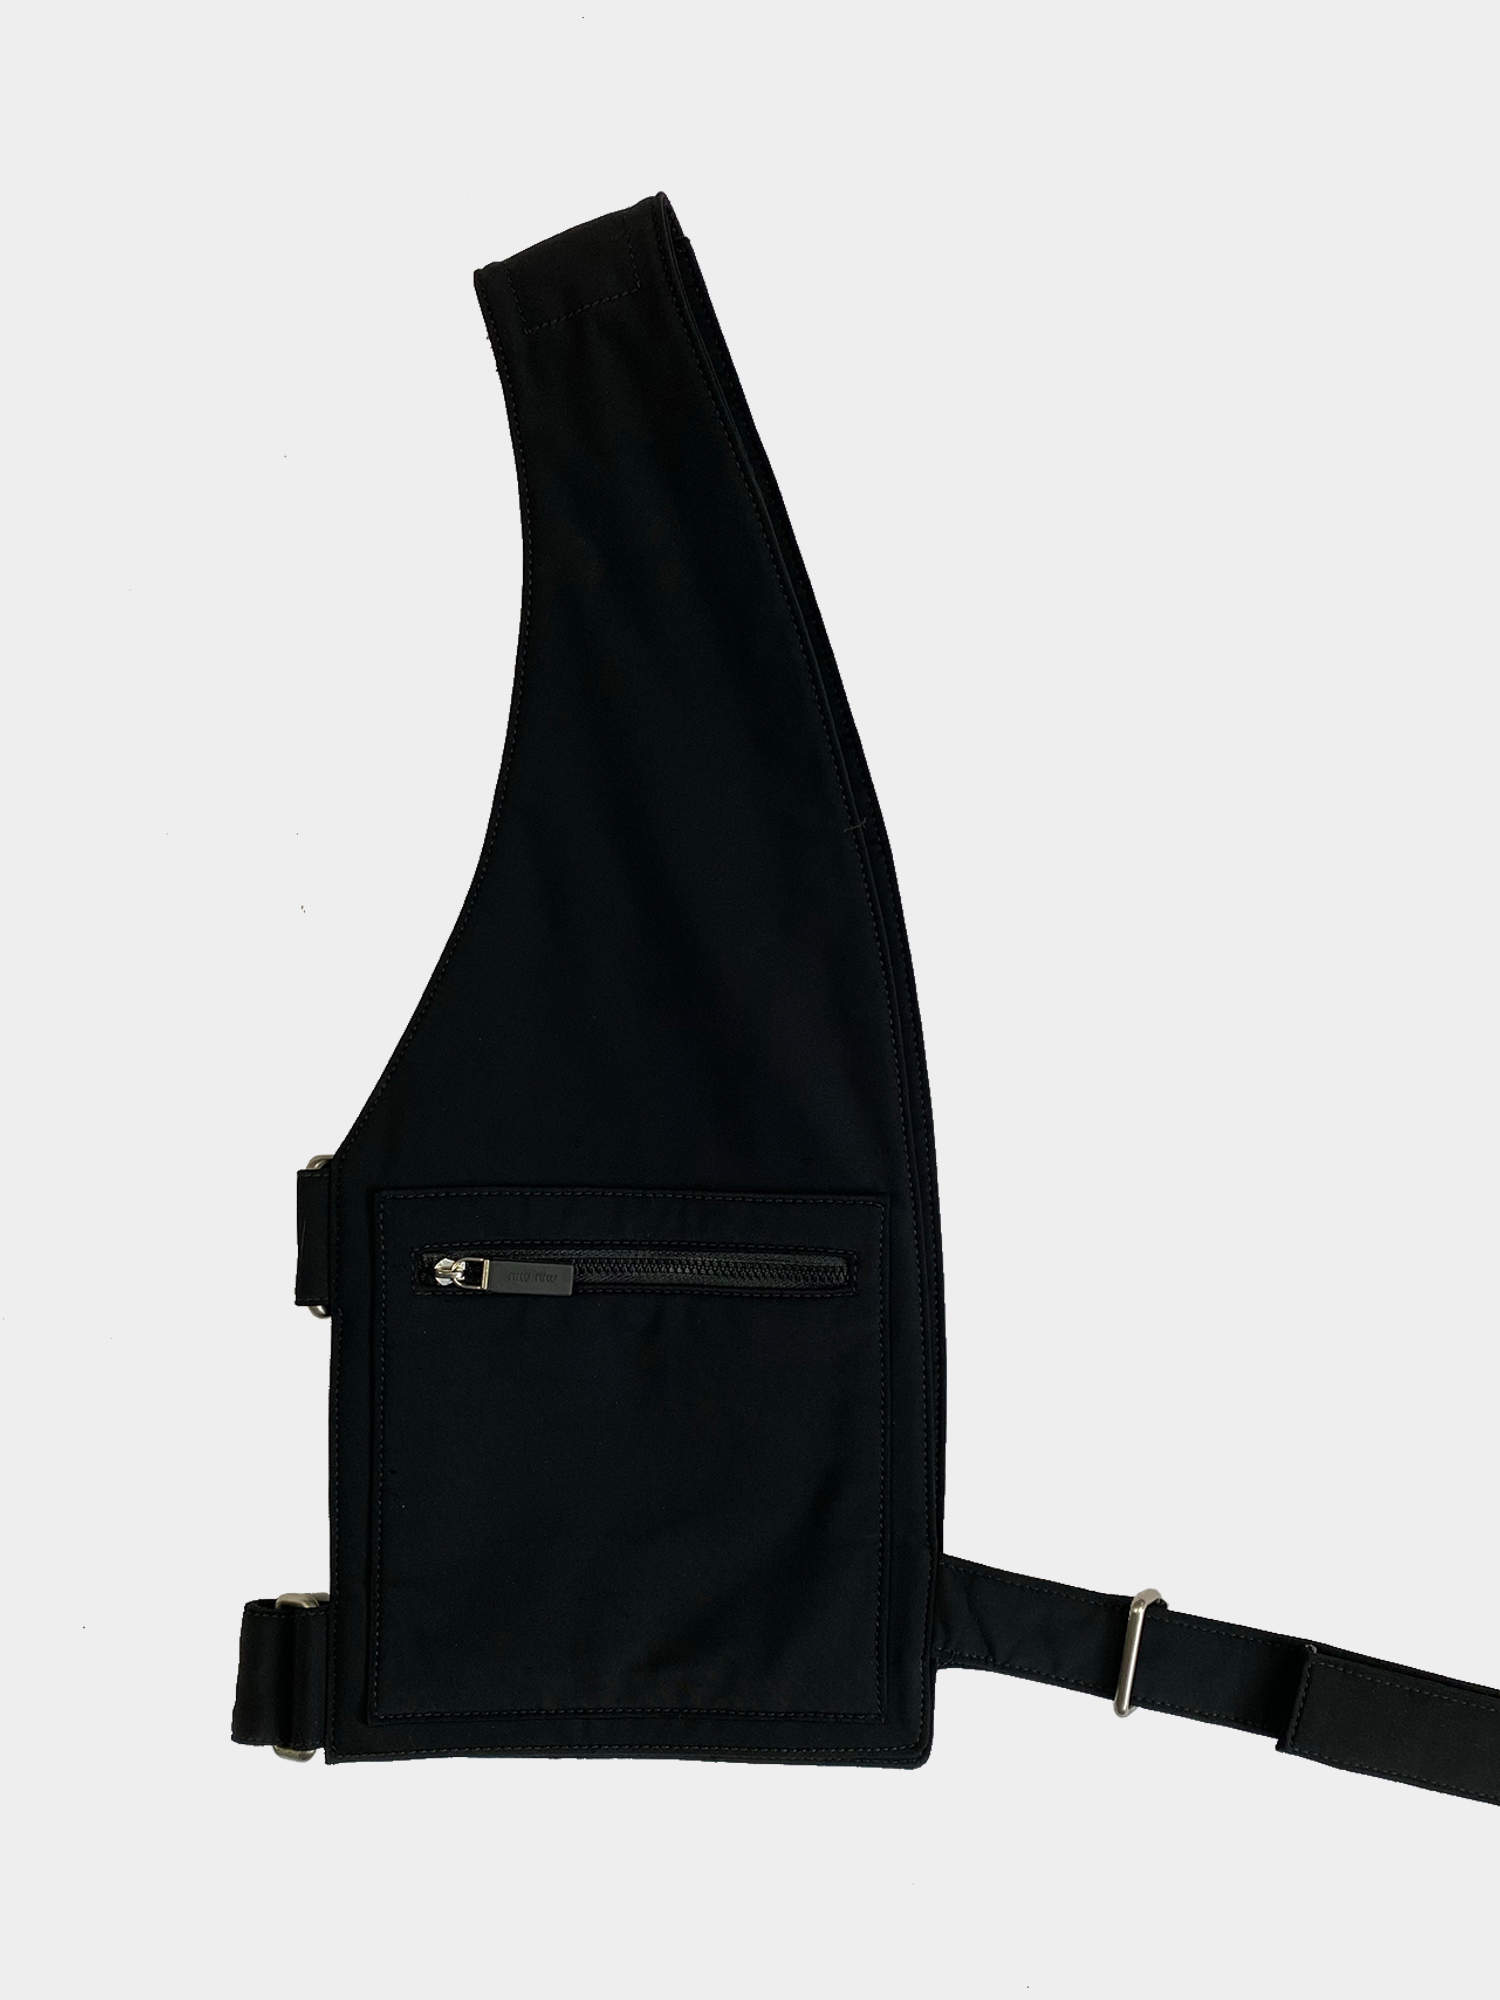 MIU MIU S/S99 Black Harness - ARCHIVED